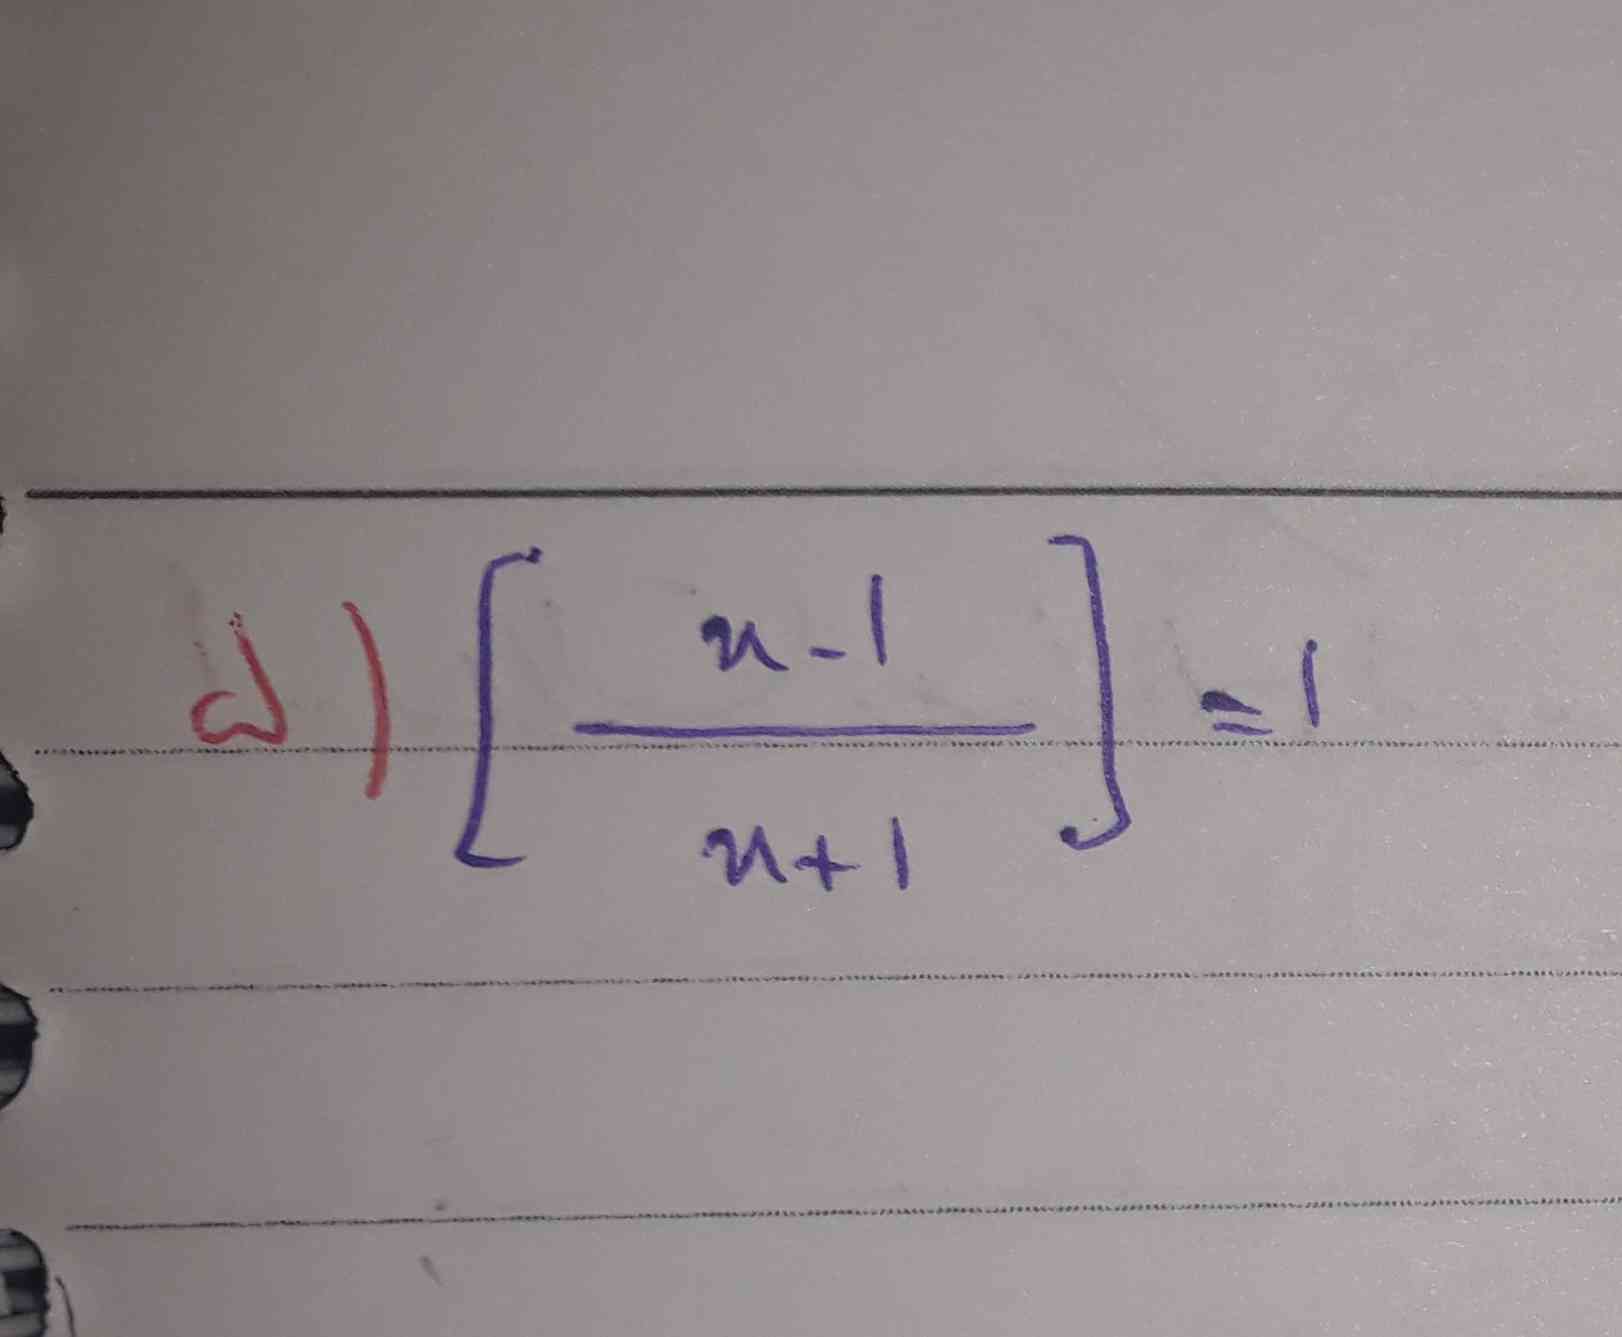 لطفا معادله زیر رو حل کتید .